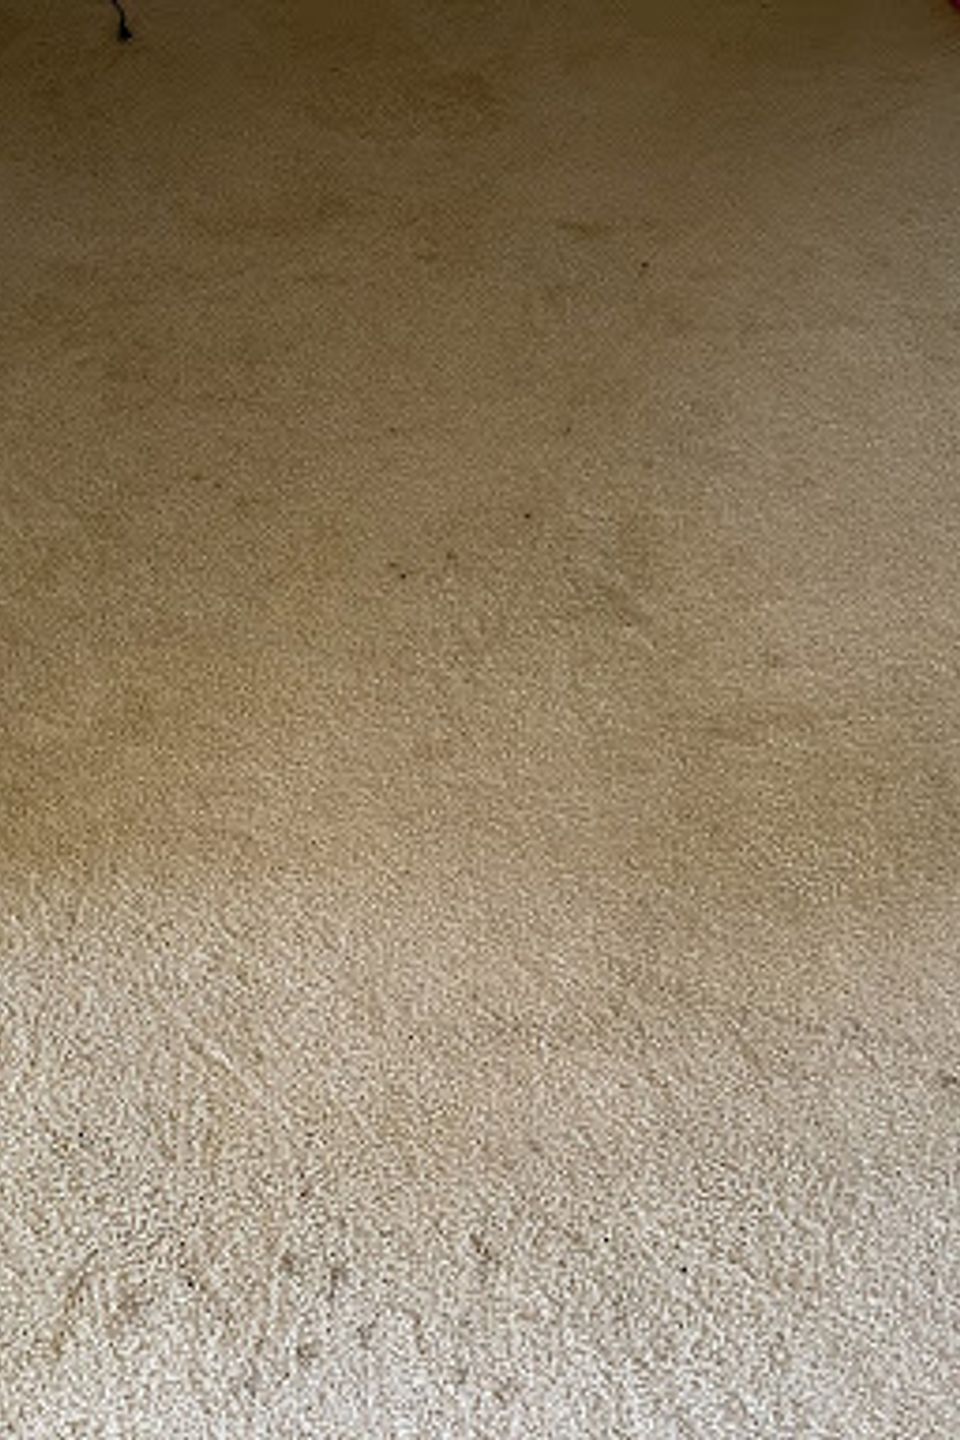 Carpet15